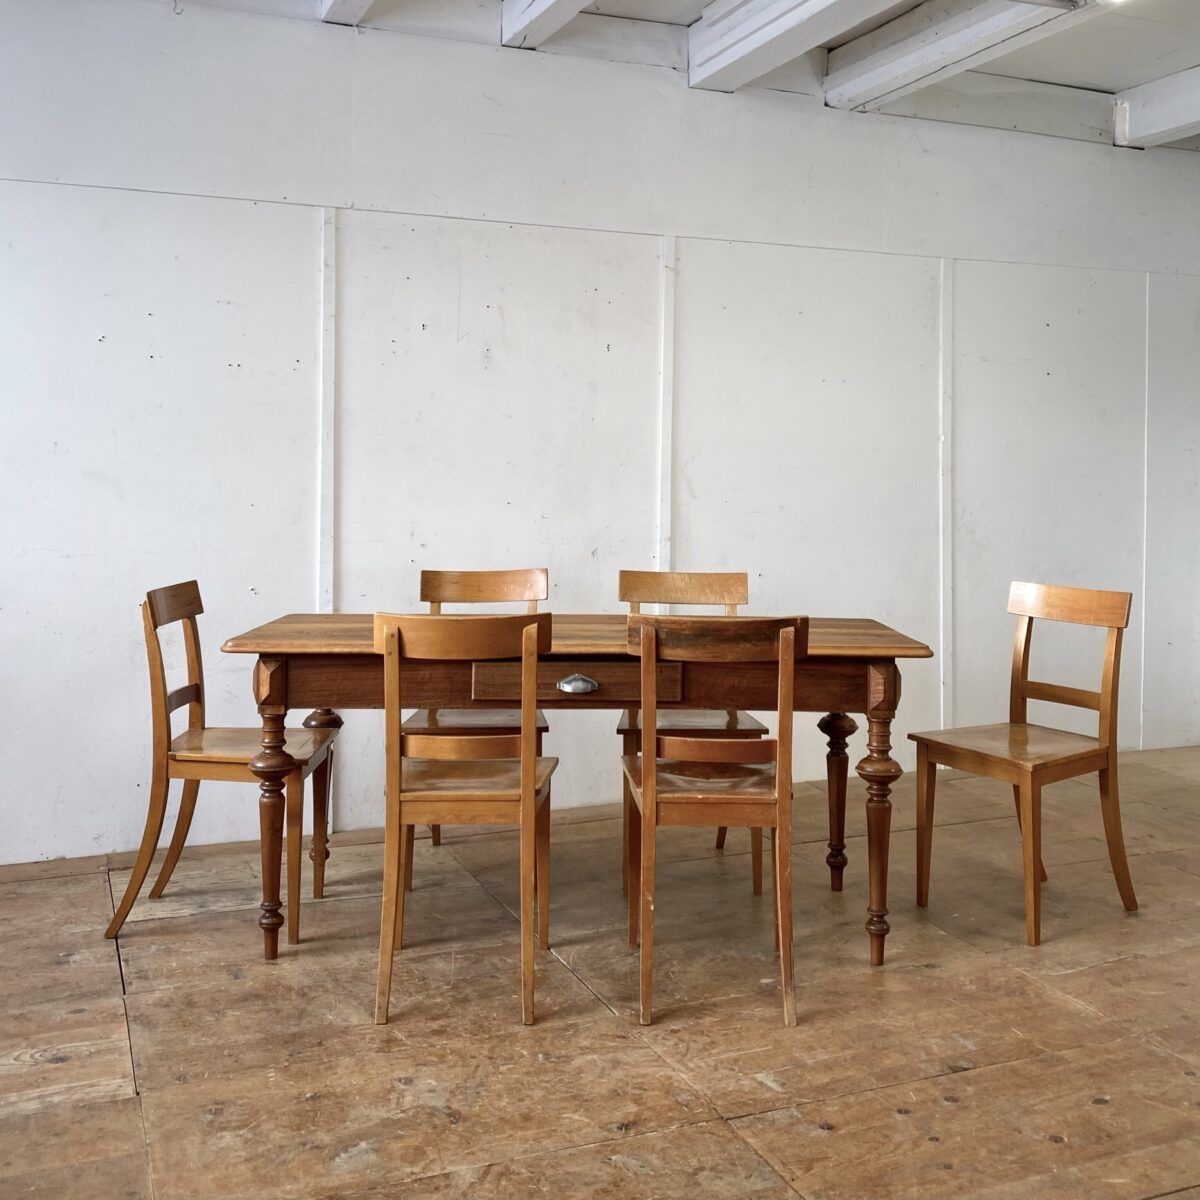 12 Buchenholz Stühle von Horgen Glarus. Preis pro Stuhl. Die Stühle sind in stabilem Zustand, die Oberflächen haben diverse Abnutzungen und teilweise Verfärbungen im Holz. Die Hinterbeine und Rückenlehne sind Dampfgebogen, ansonsten eher eckige Grundformen, ein mix aus Biedermeier Stuhl und Beizenstuhl. 